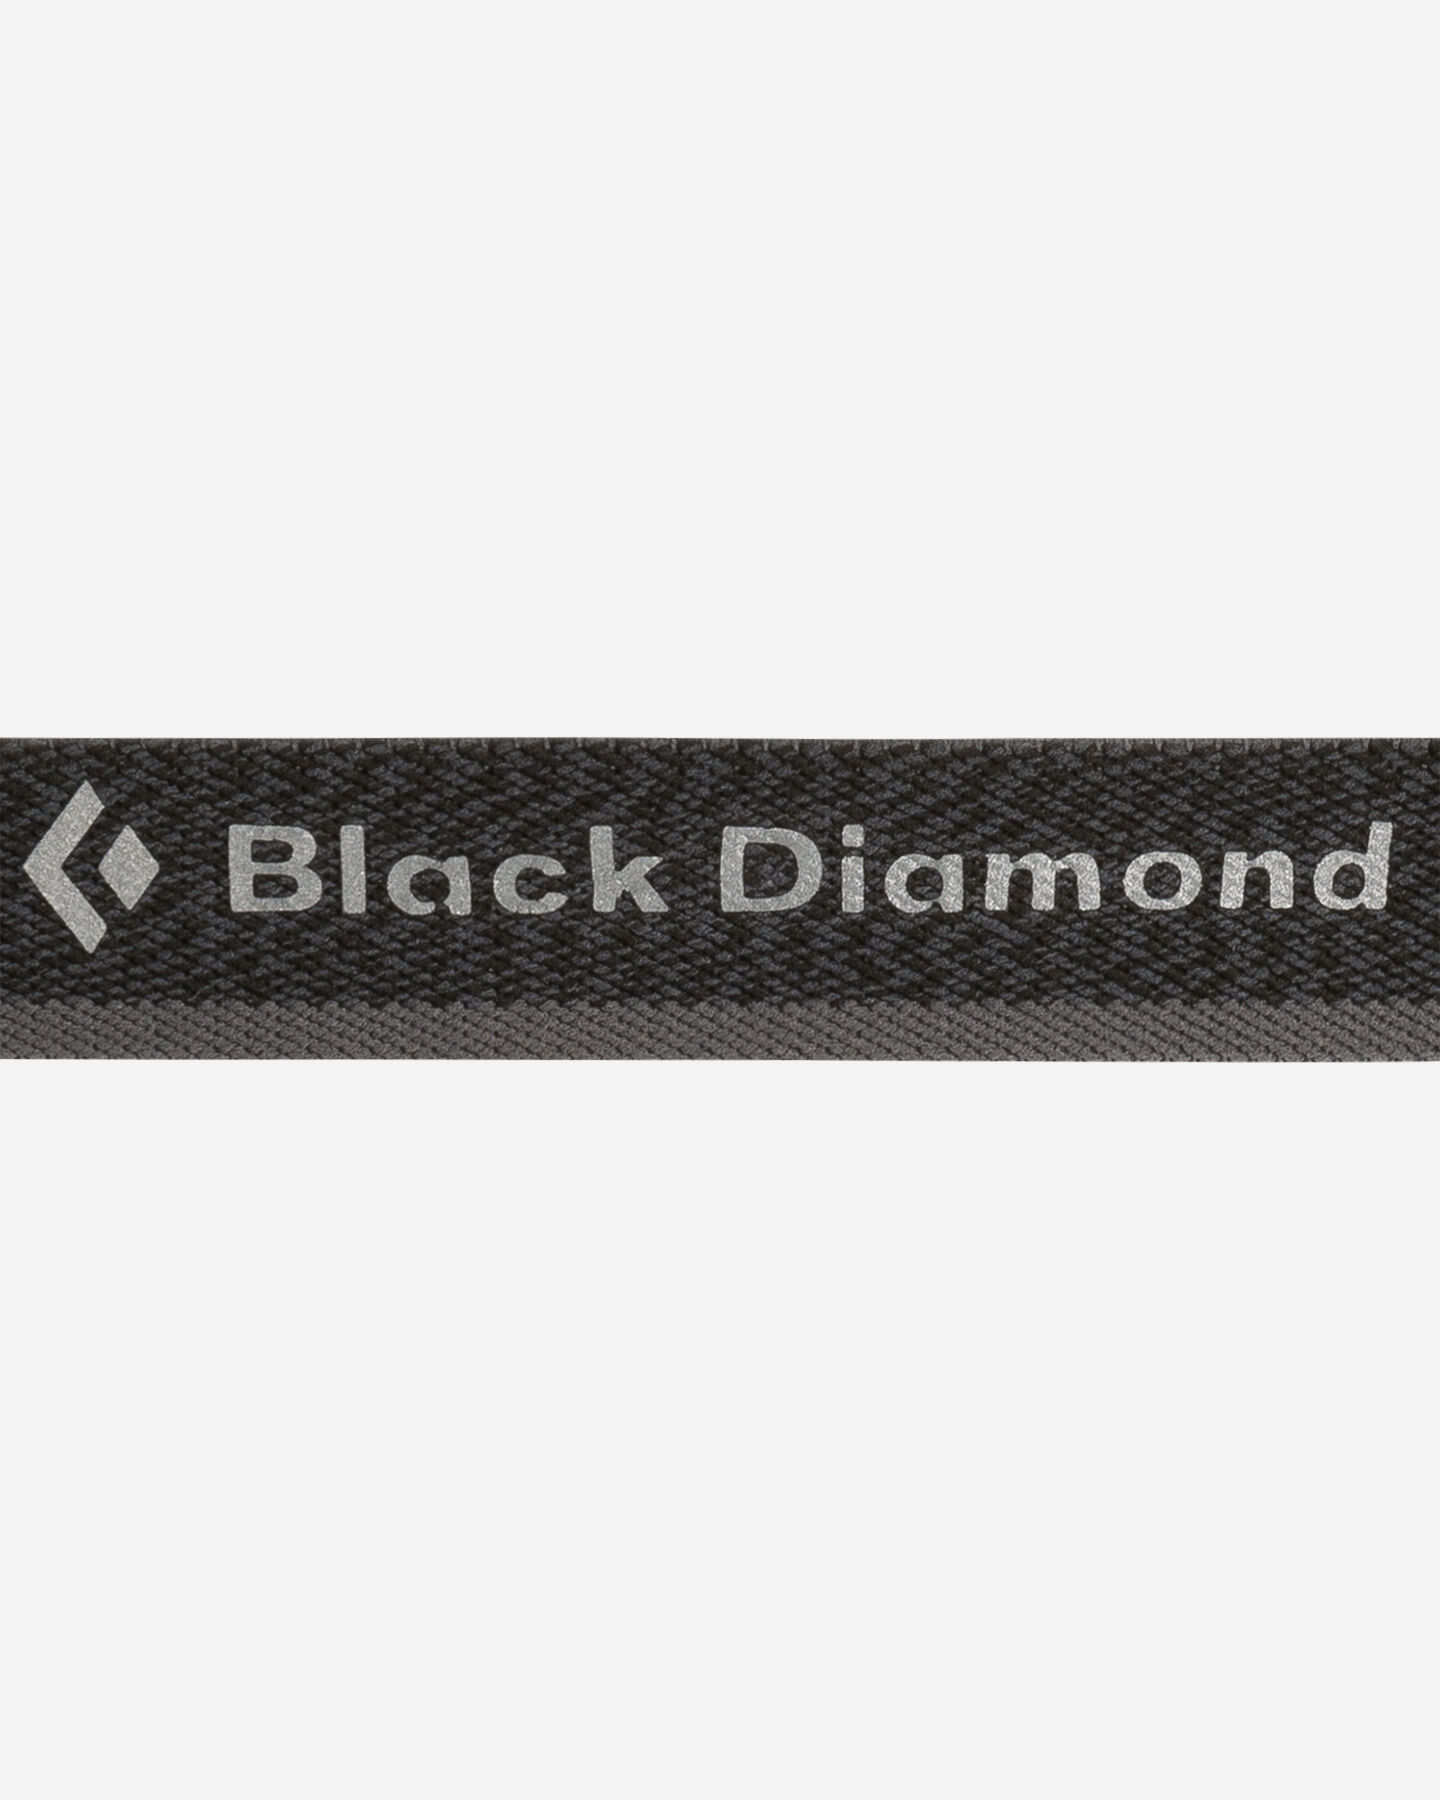  Lampada frontale BLACK DIAMOND LAMPADA FRONTALE BD COSMO 350 620673  S4104054|1|UNI scatto 1